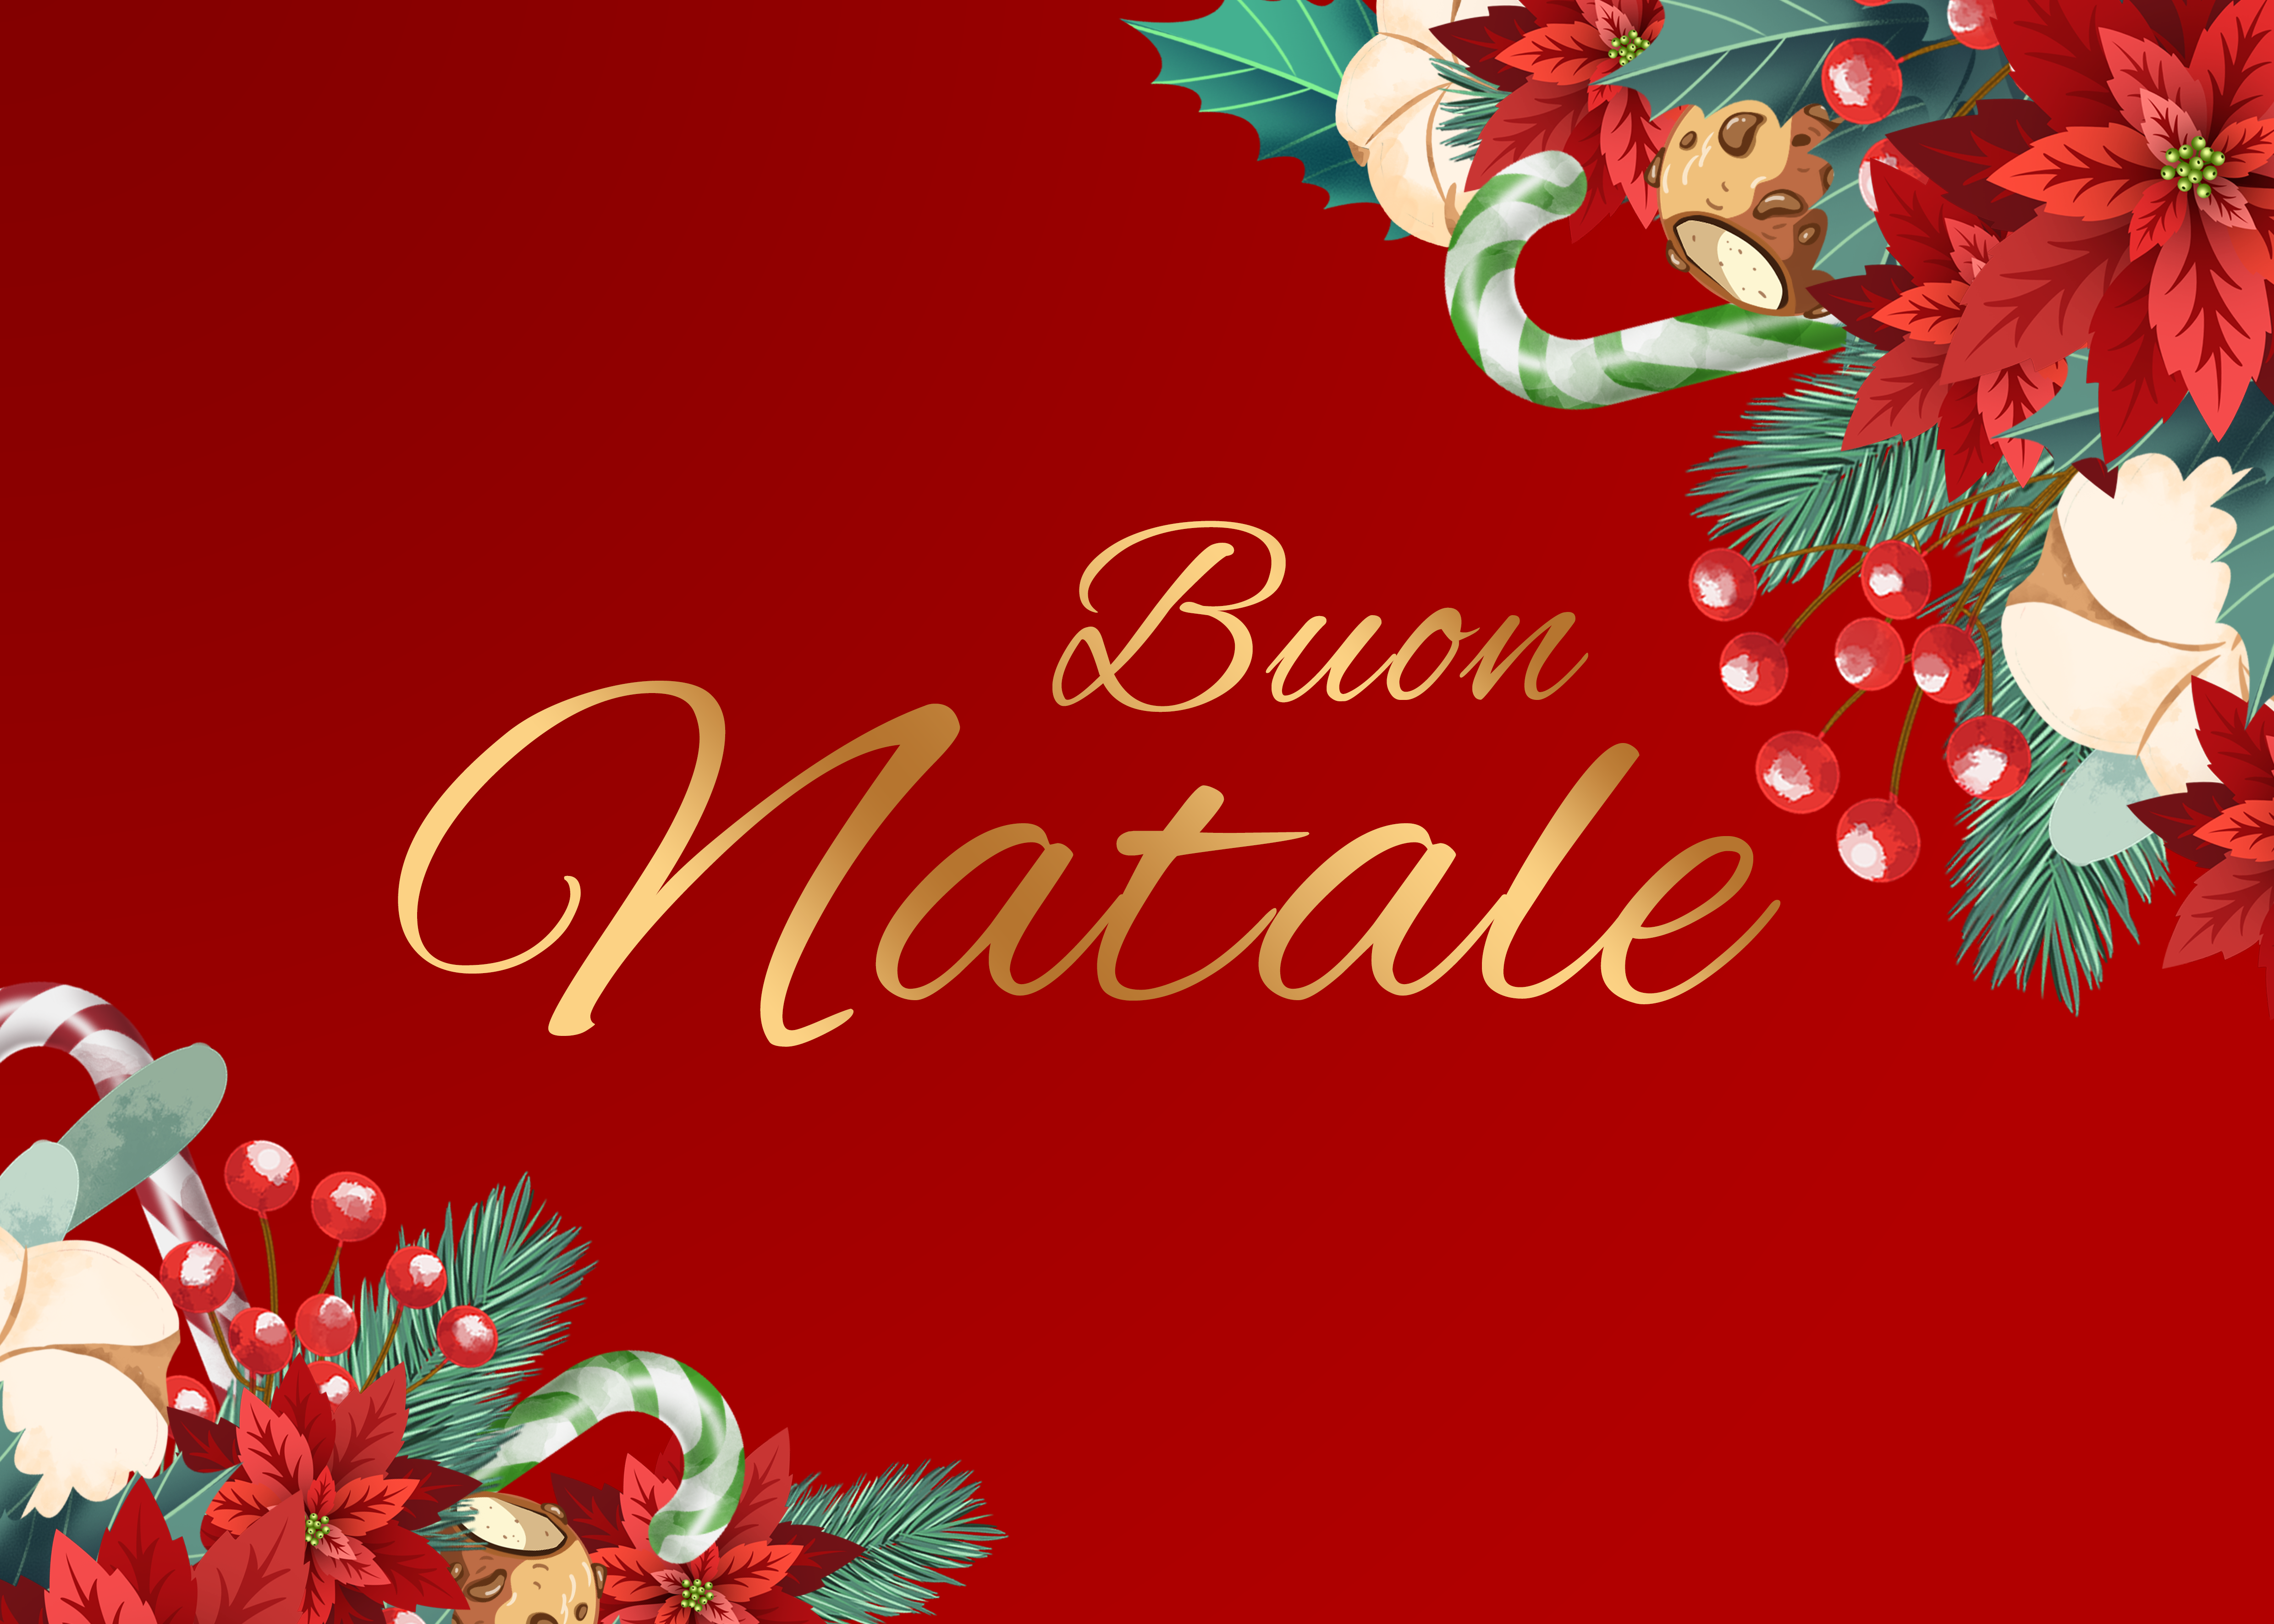 意大利圣诞节快乐树叶花朵红色背景图片